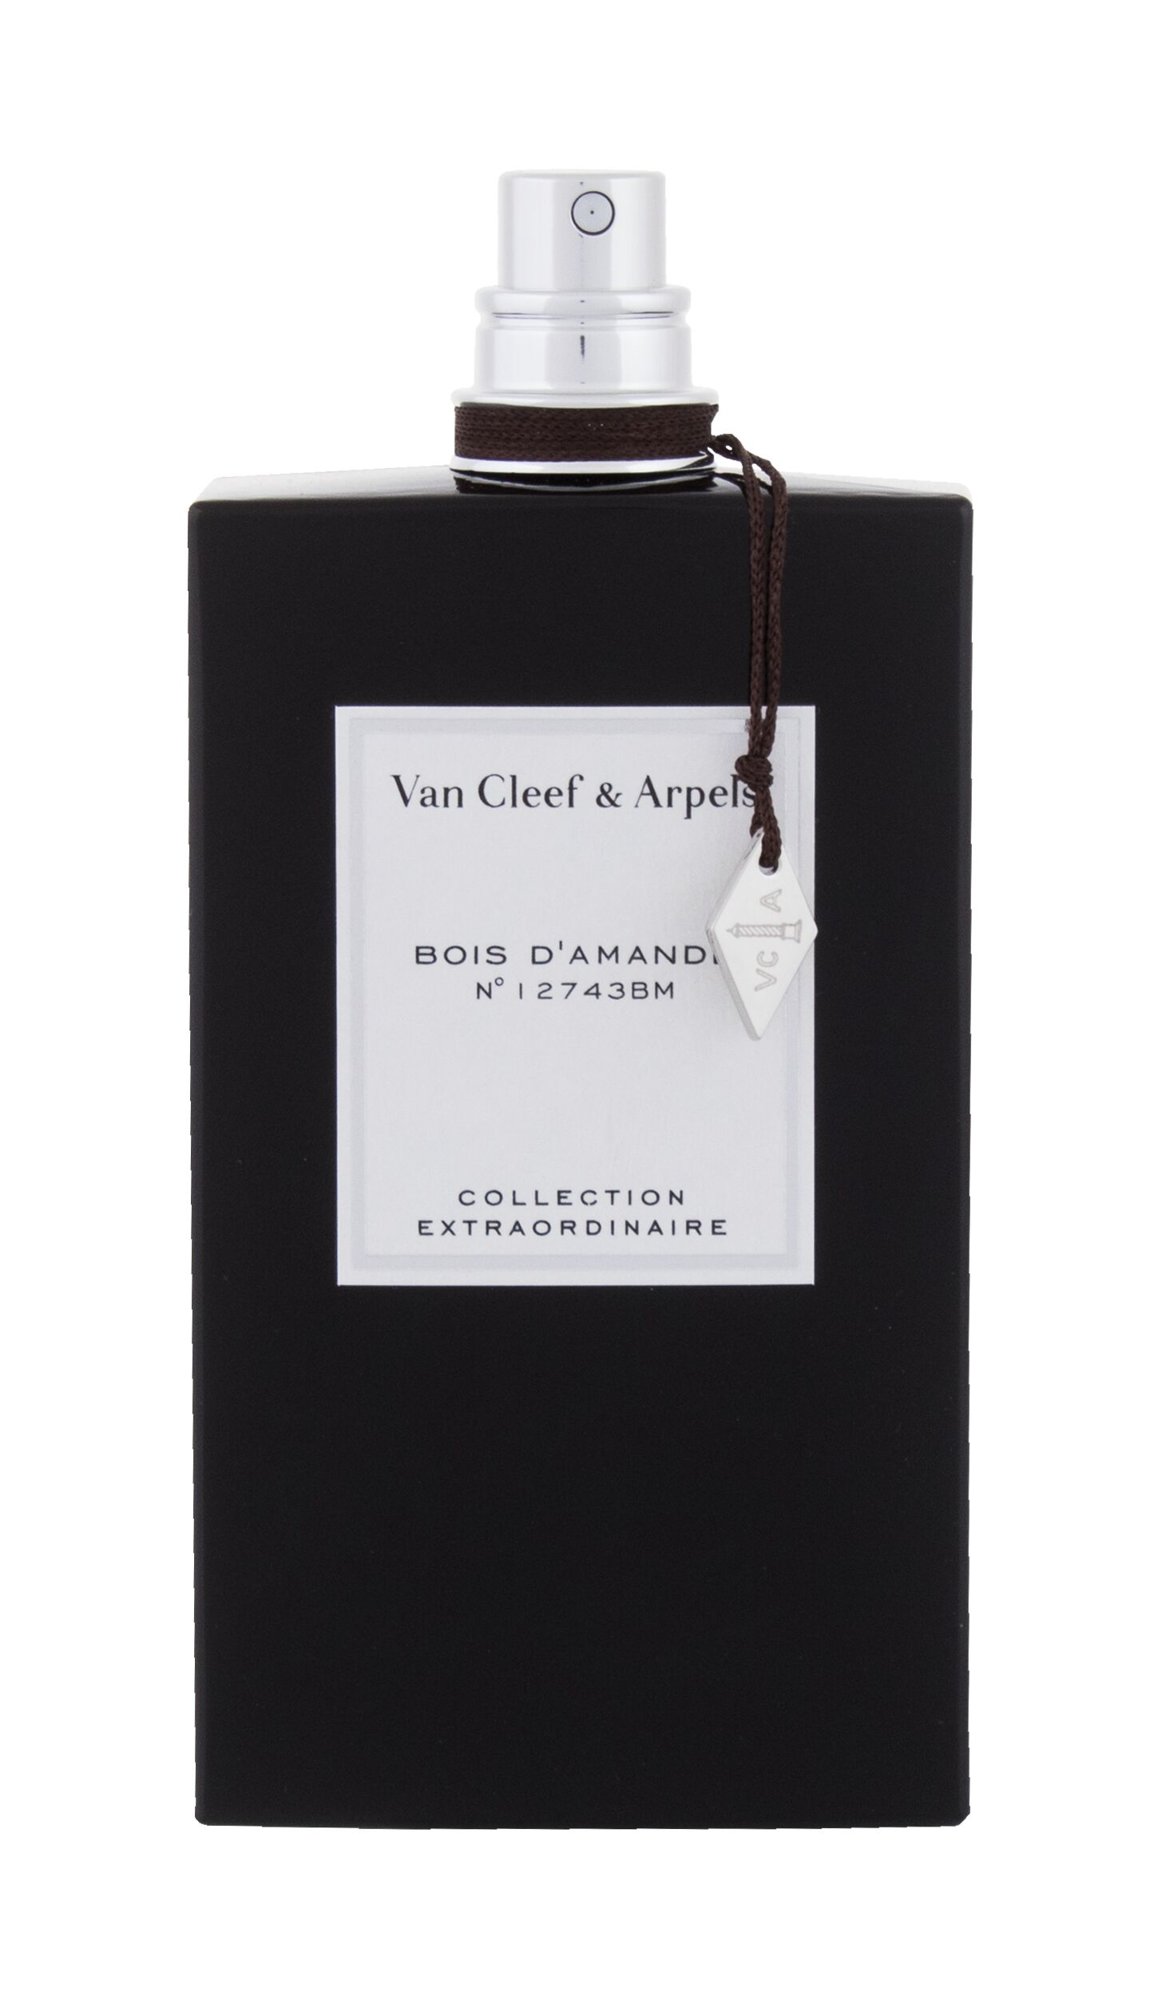 Van Cleef & Arpels Collection Extraordinaire Bois d´Amande 5 ml NIŠINIAI kvepalų mėginukas (atomaizeris) Unisex EDP